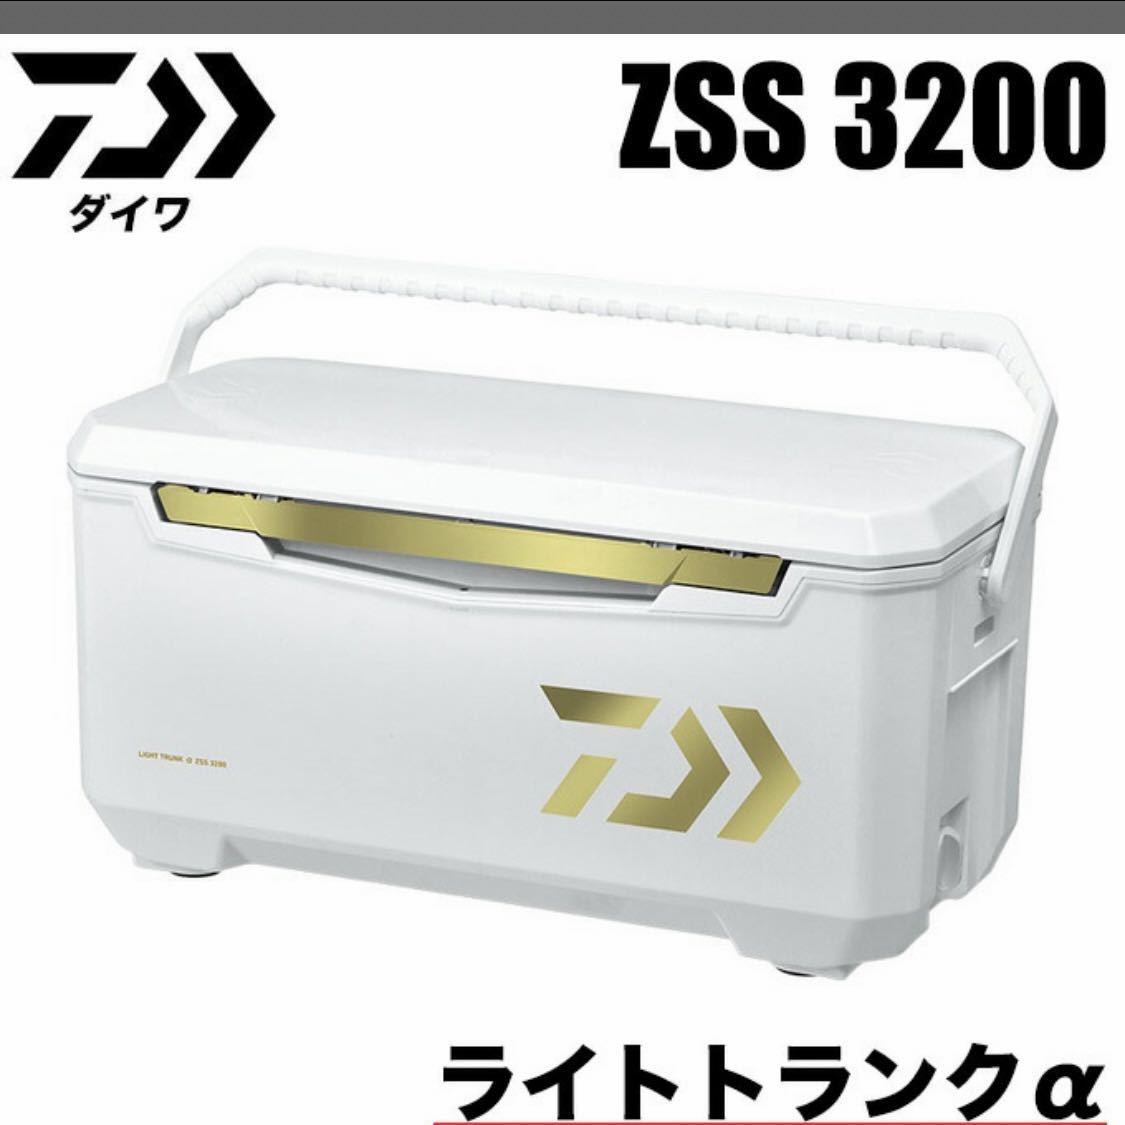 【新品・送料無料】ダイワ ライトトランクα ZSS 3200 クーラーボックス_画像1